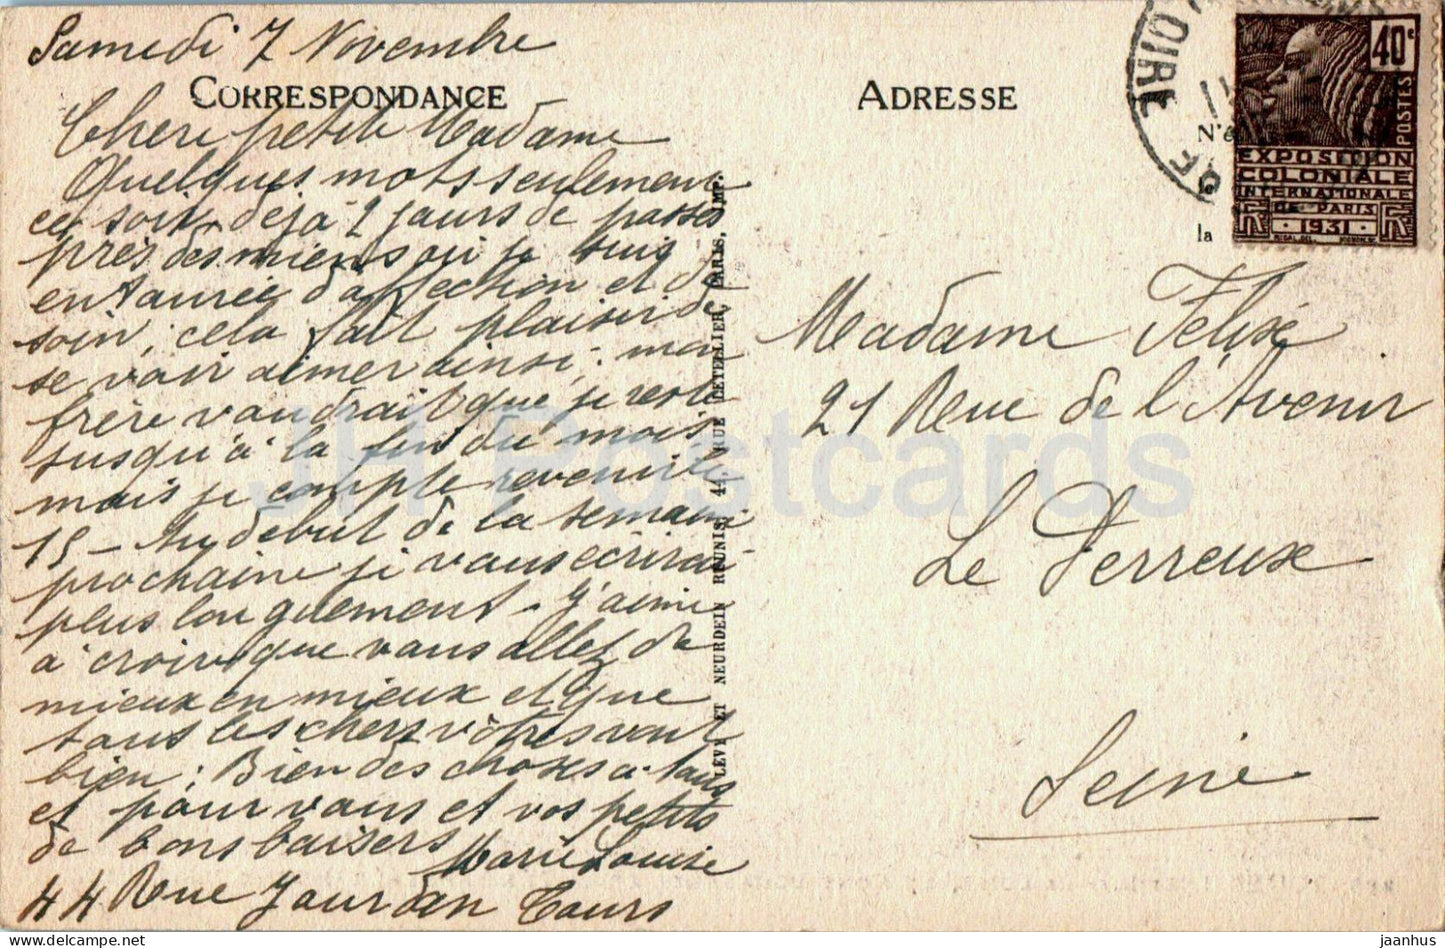 Touren - La Loire - Le Pont Bonaparte et la Vue Generale - Nord Ouest - Brücke - 289 - alte Postkarte - Frankreich - gebraucht 